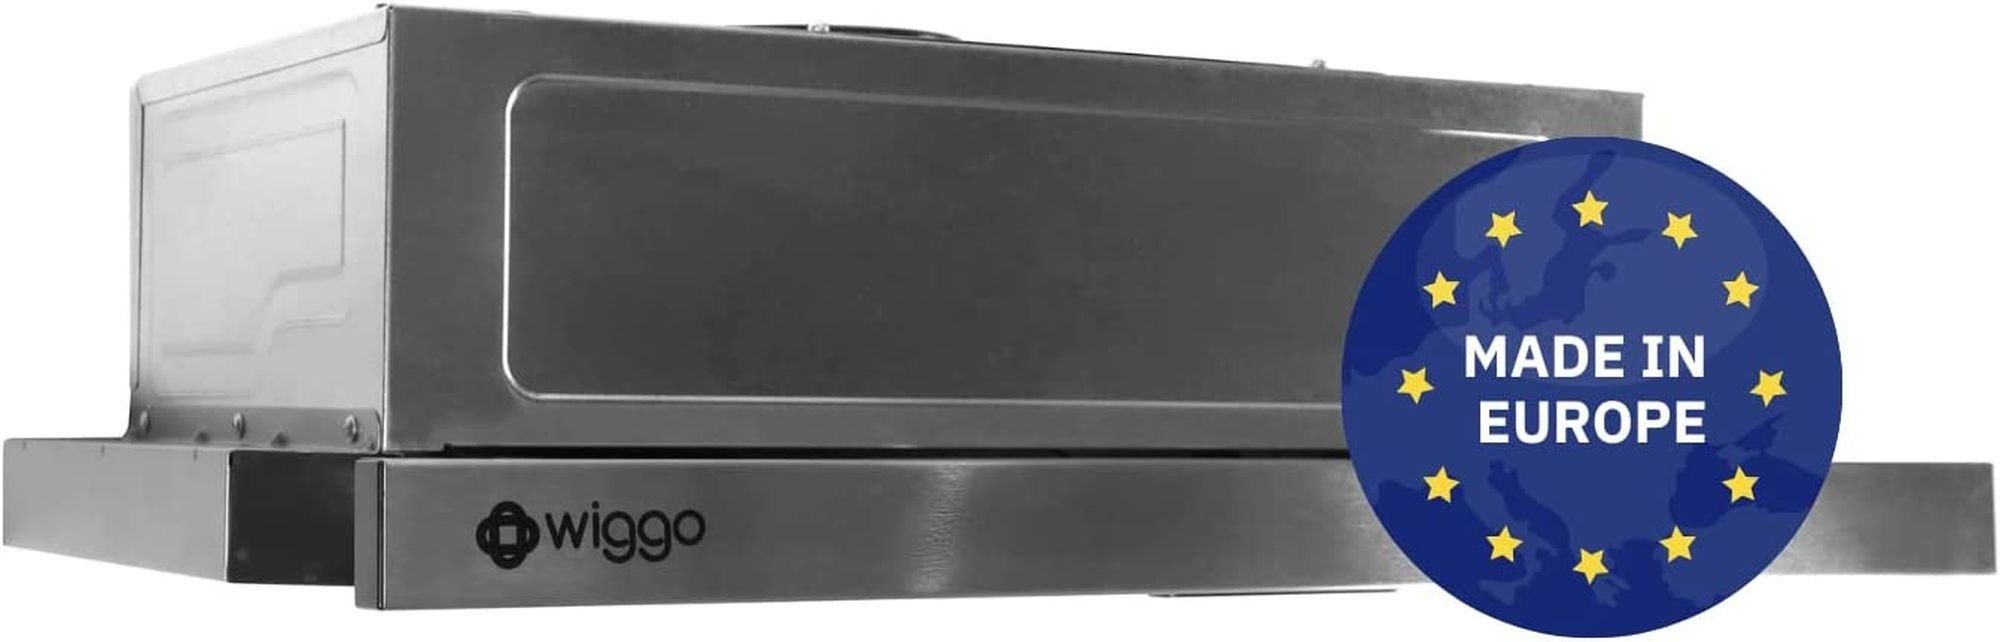 wiggo Flachschirmhaube WE-E632ER Unterbauhaube 60 cm - Edelstahl, Abluft oder Umluft Dunstabzug 300m³/h mit LED-Beleuchtung